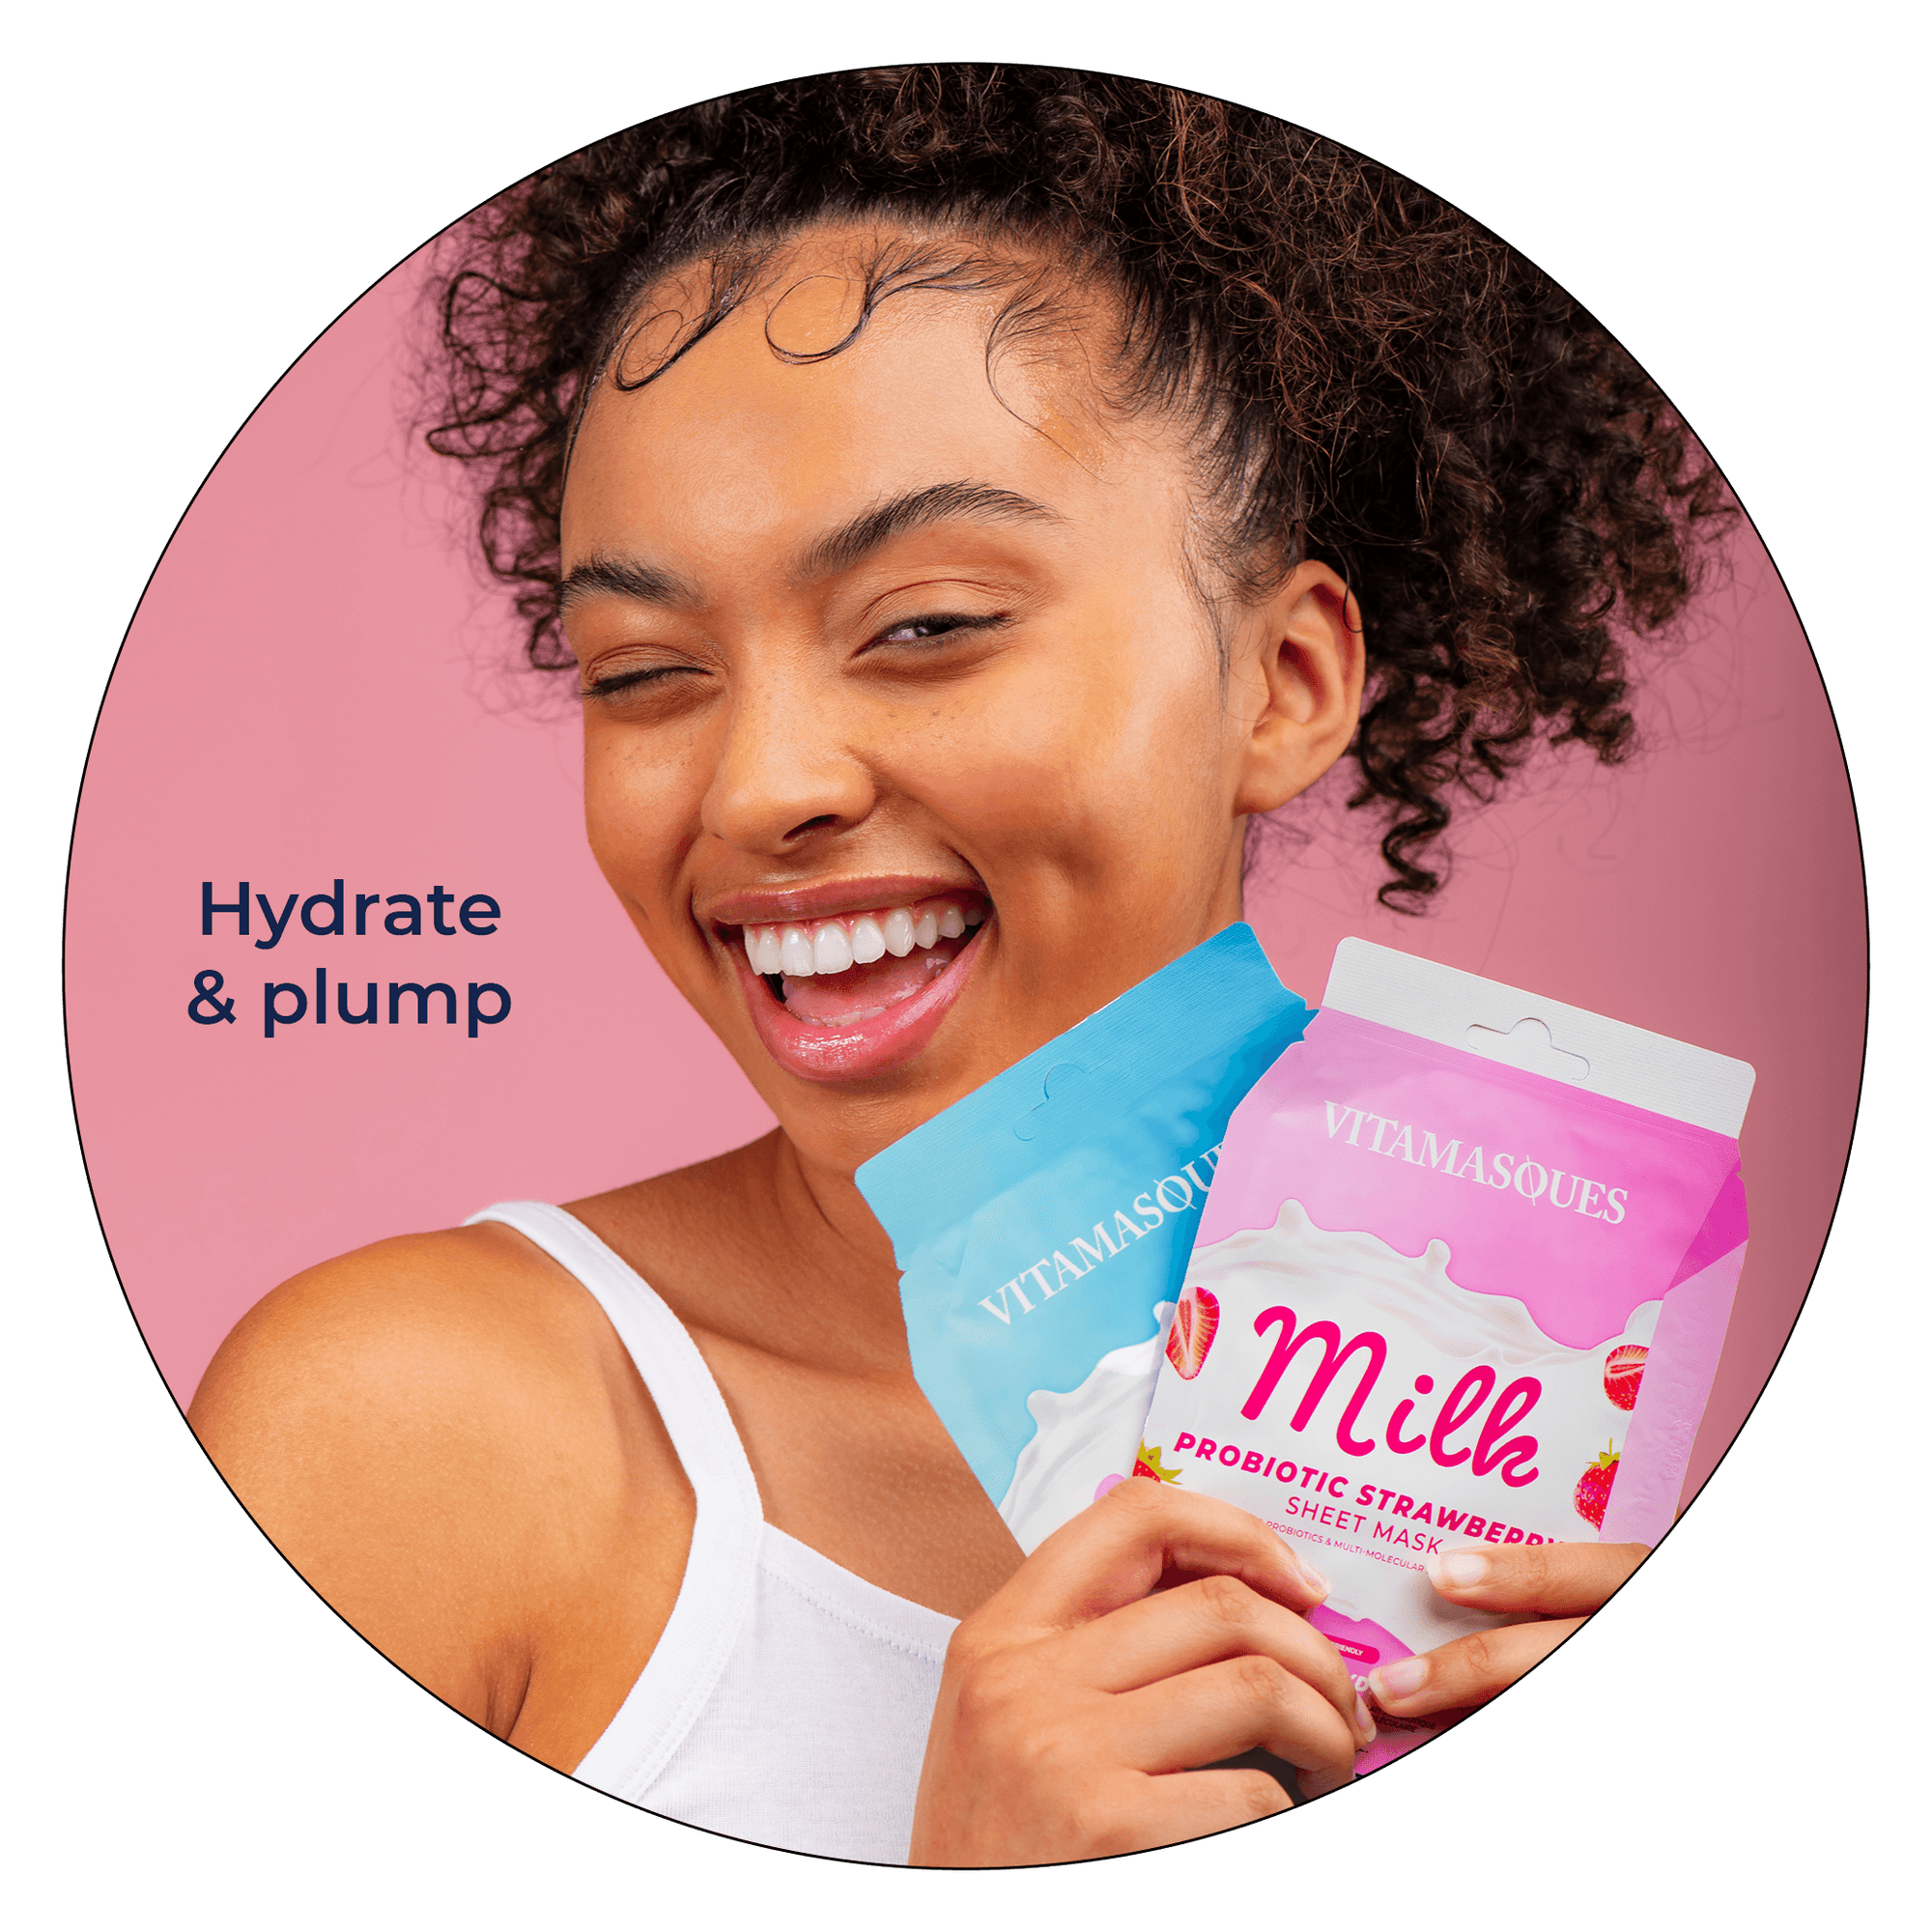 Milk Marine Collagen Sheet Mask - Vitamasques